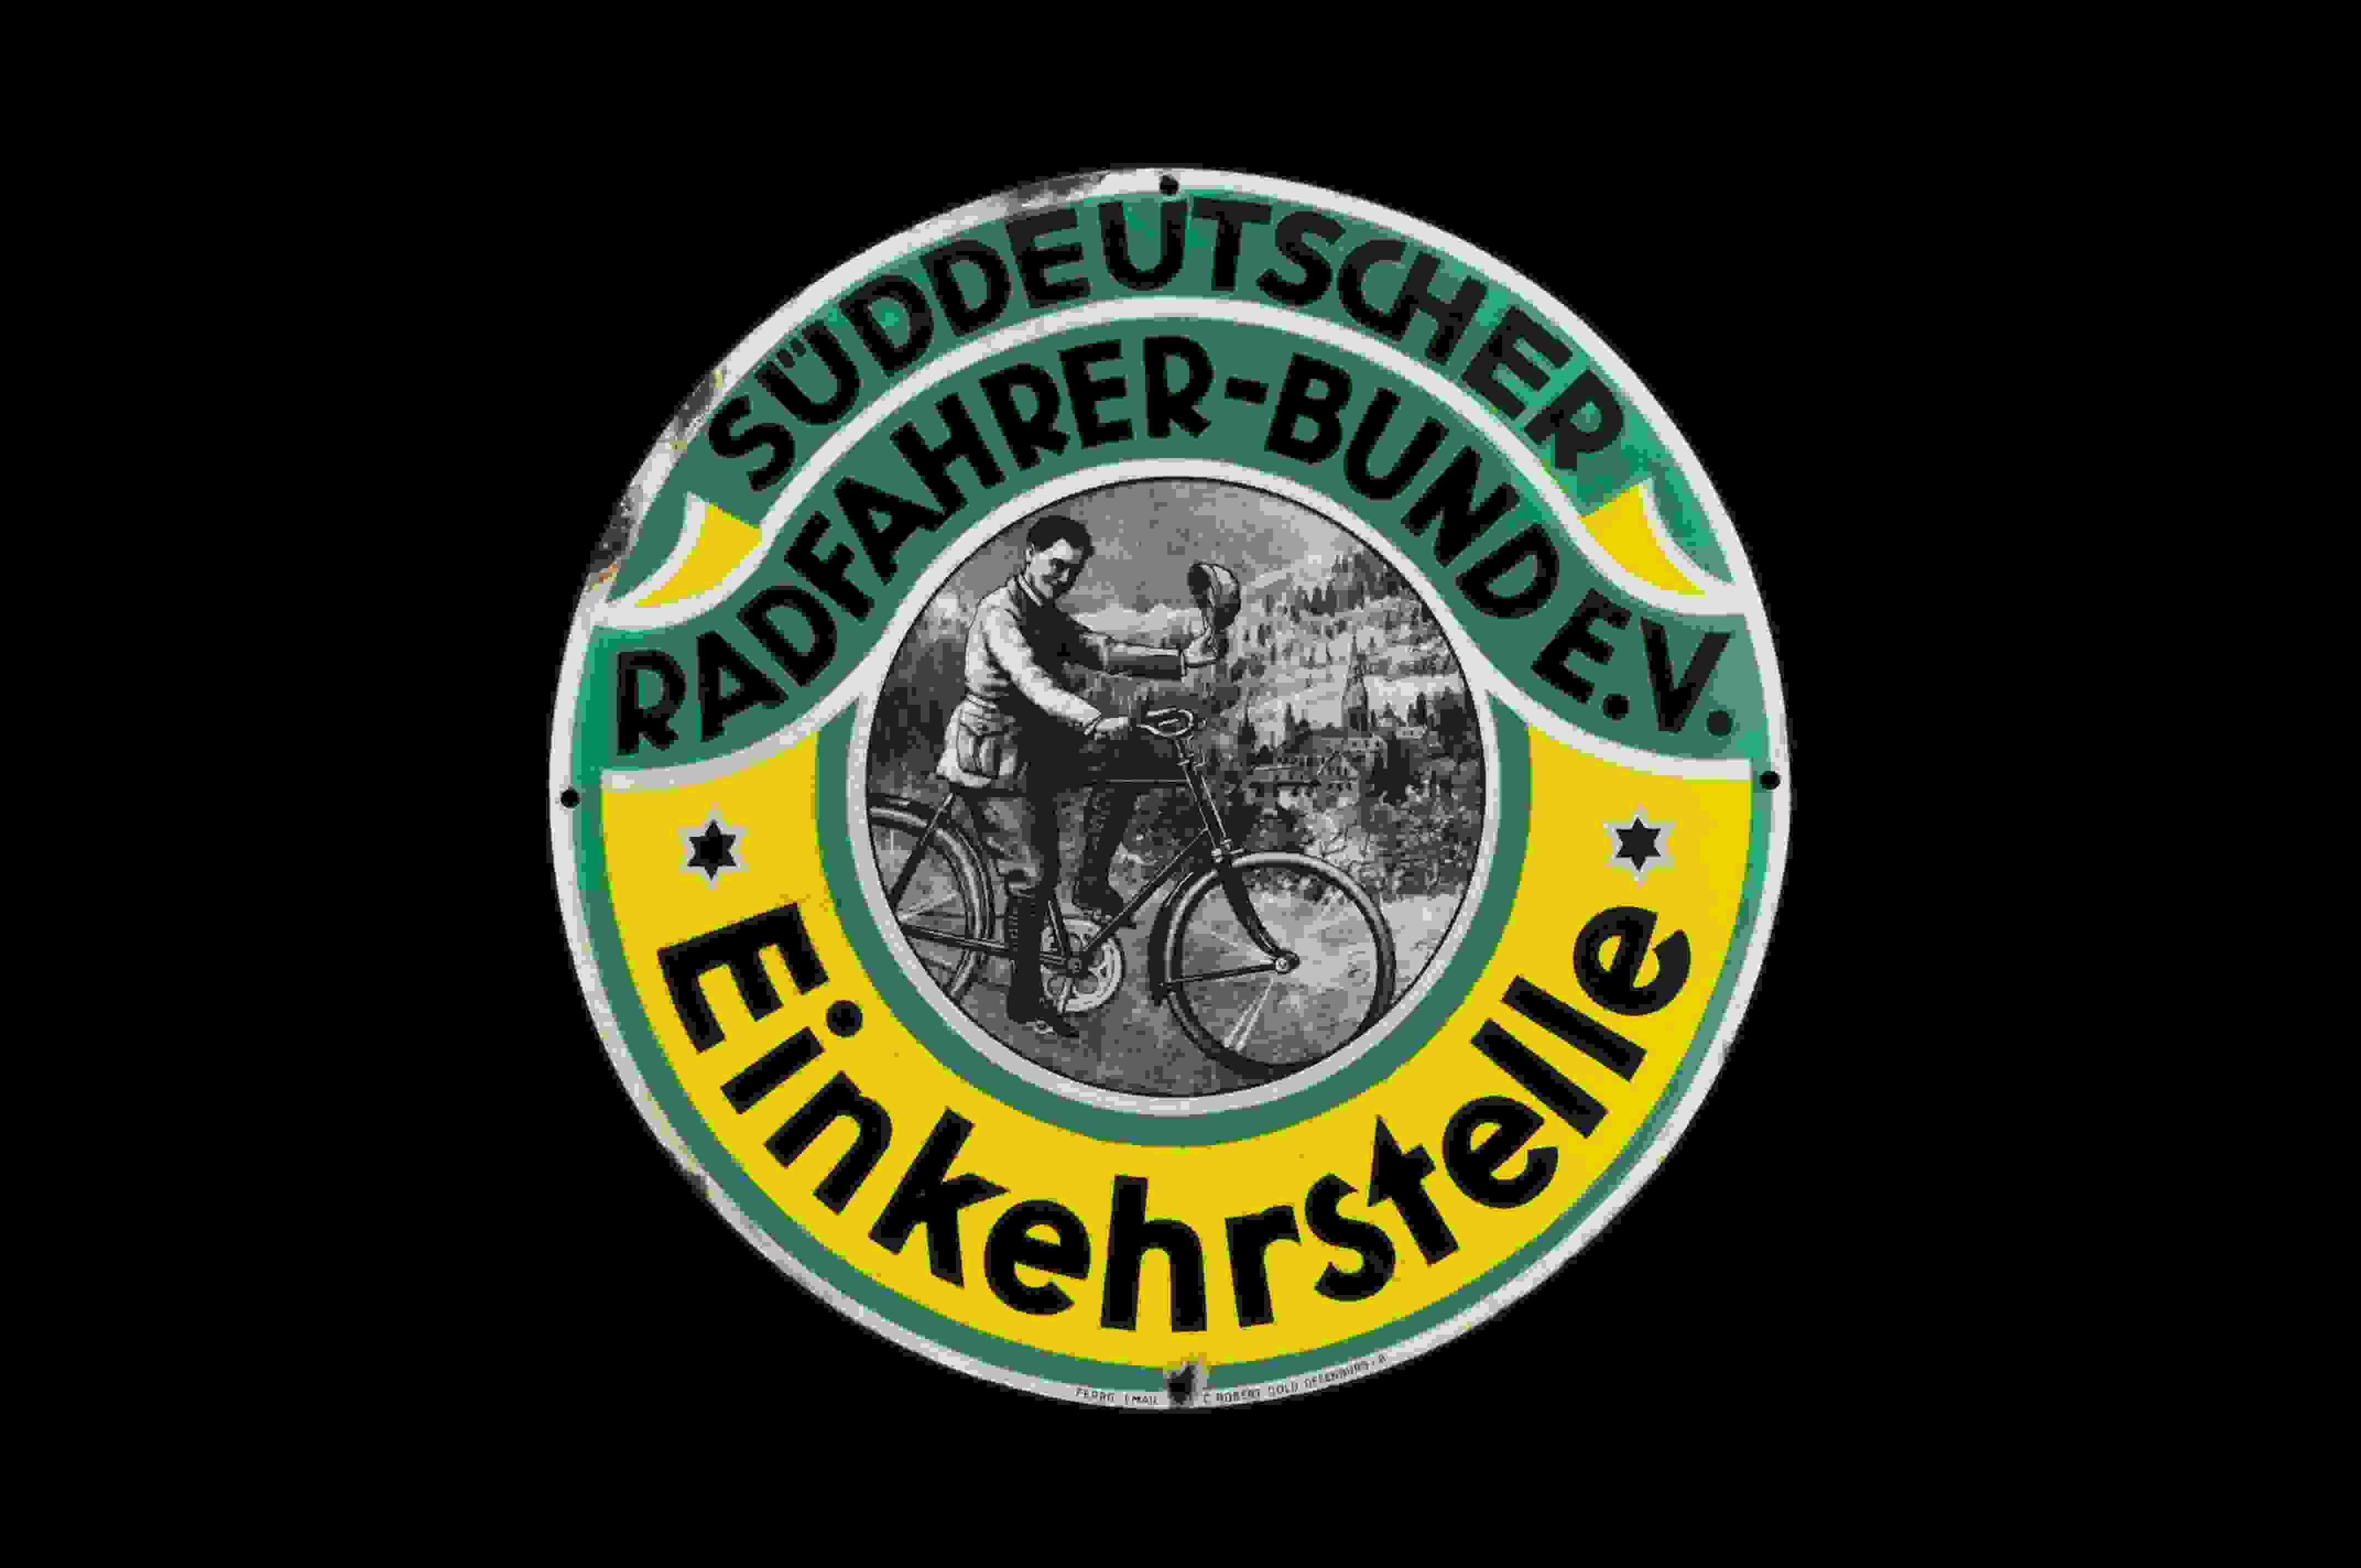 Süddeutscher Radfahrer-Bund e.V. 